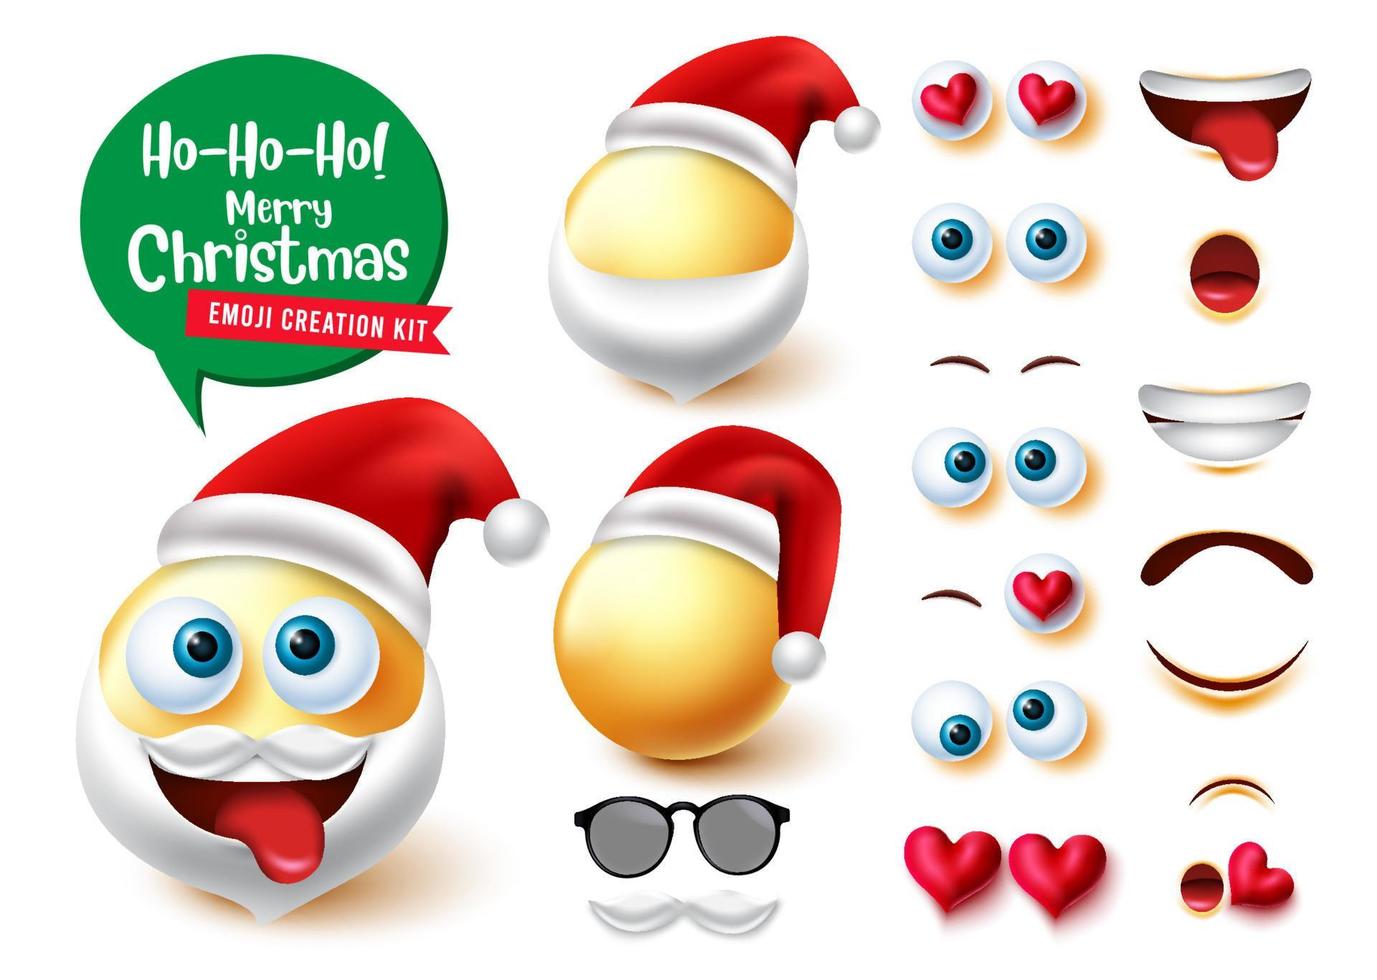 Emojis Weihnachtsmann-Schöpfer-Vektor-Set. 3D-Santa-Charaktere-Kit mit niedlichen, verrückten und lustigen bearbeitbaren Emojis-Weihnachtsfiguren für das Design der Sammlung von Gesichtsausdrücken. Vektor-Illustration. vektor